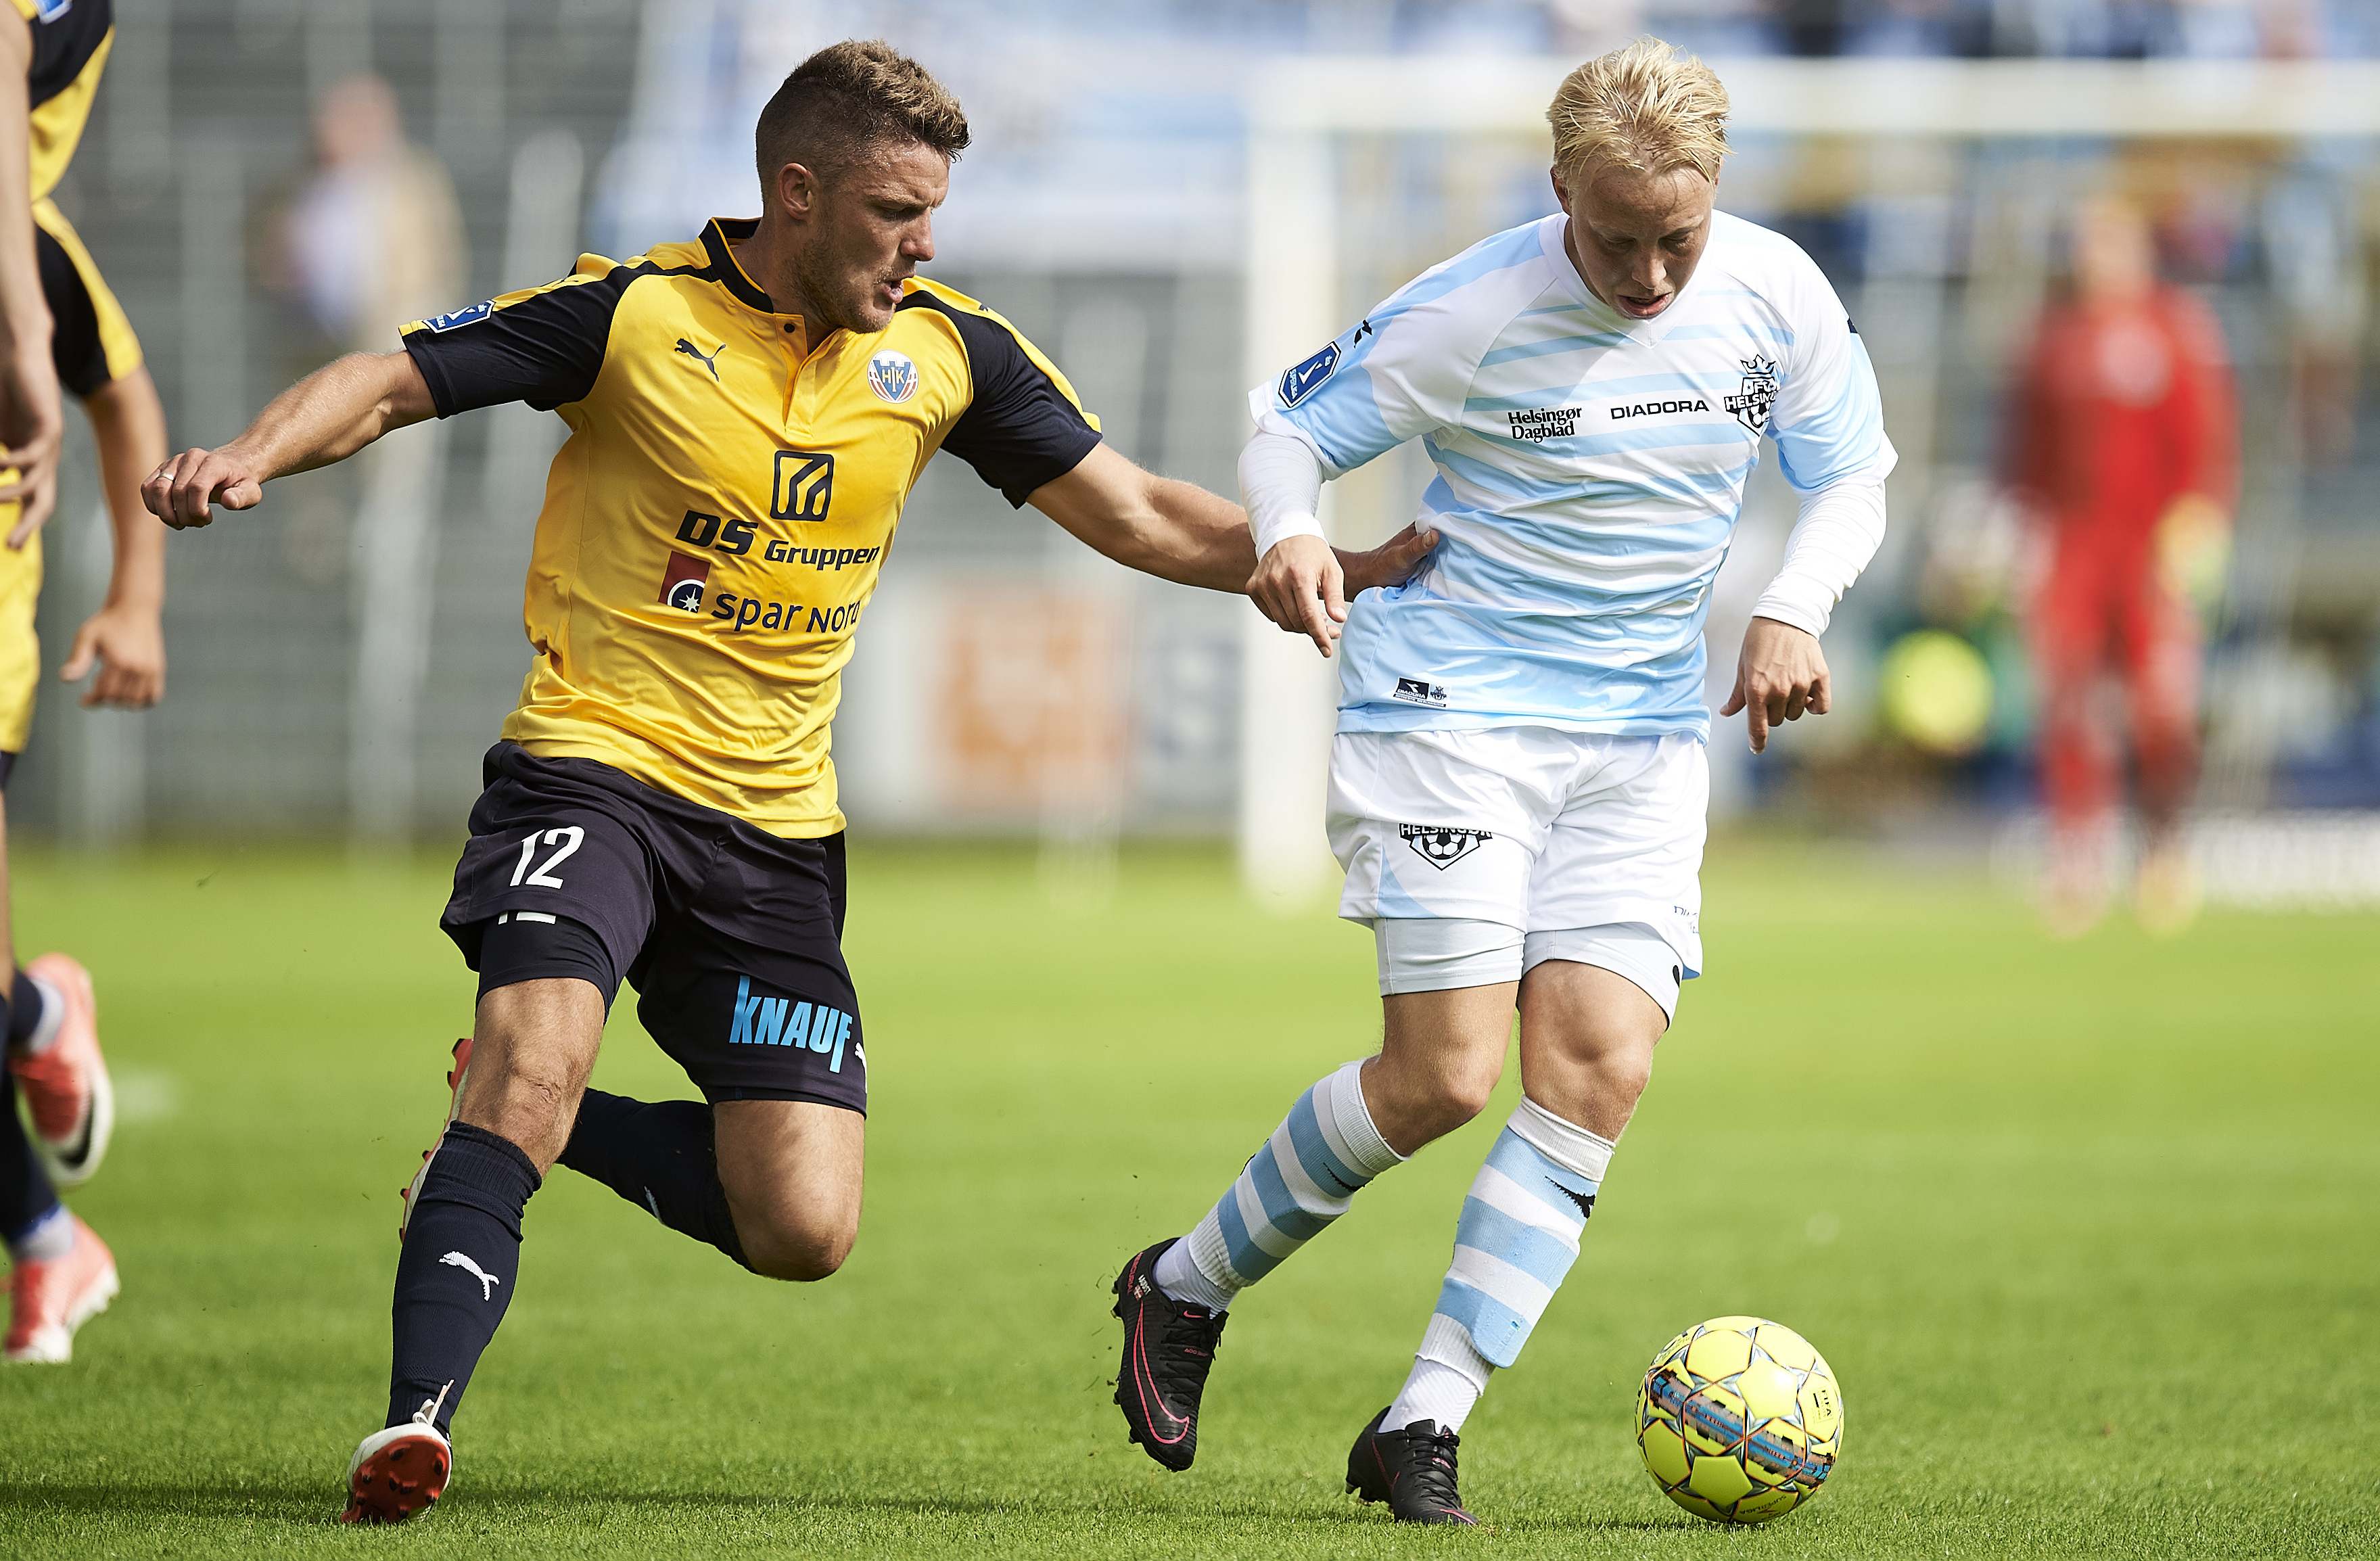 Helsingor Odense Maçı İddaa Tahmini 24.7.2017